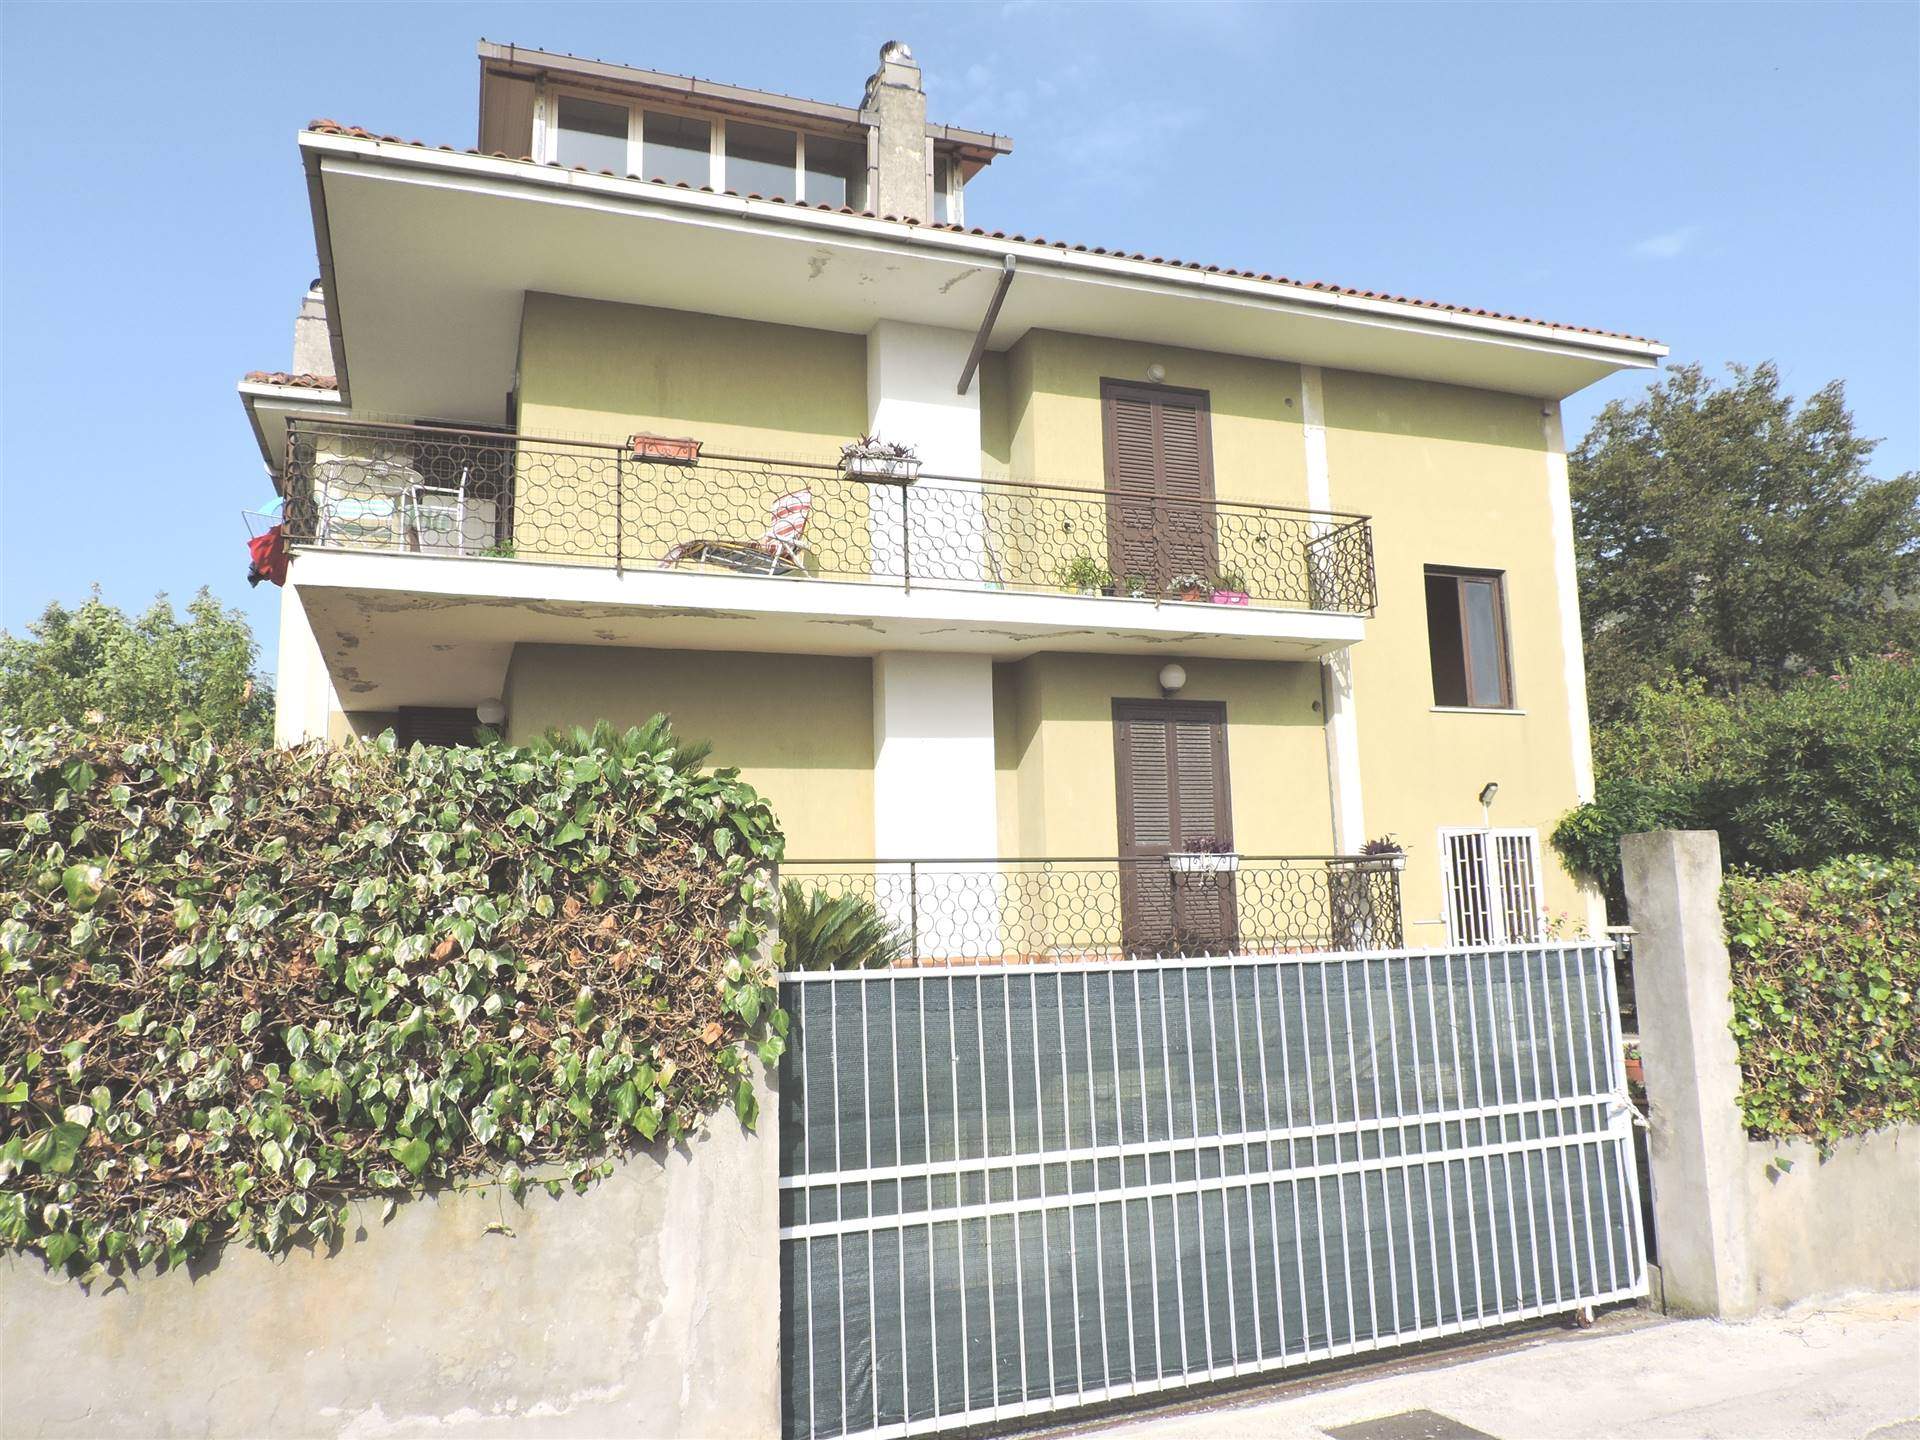 Villa Bifamiliare in vendita a Sessa Aurunca, 7 locali, zona Località: CARANO, prezzo € 285.000 | PortaleAgenzieImmobiliari.it